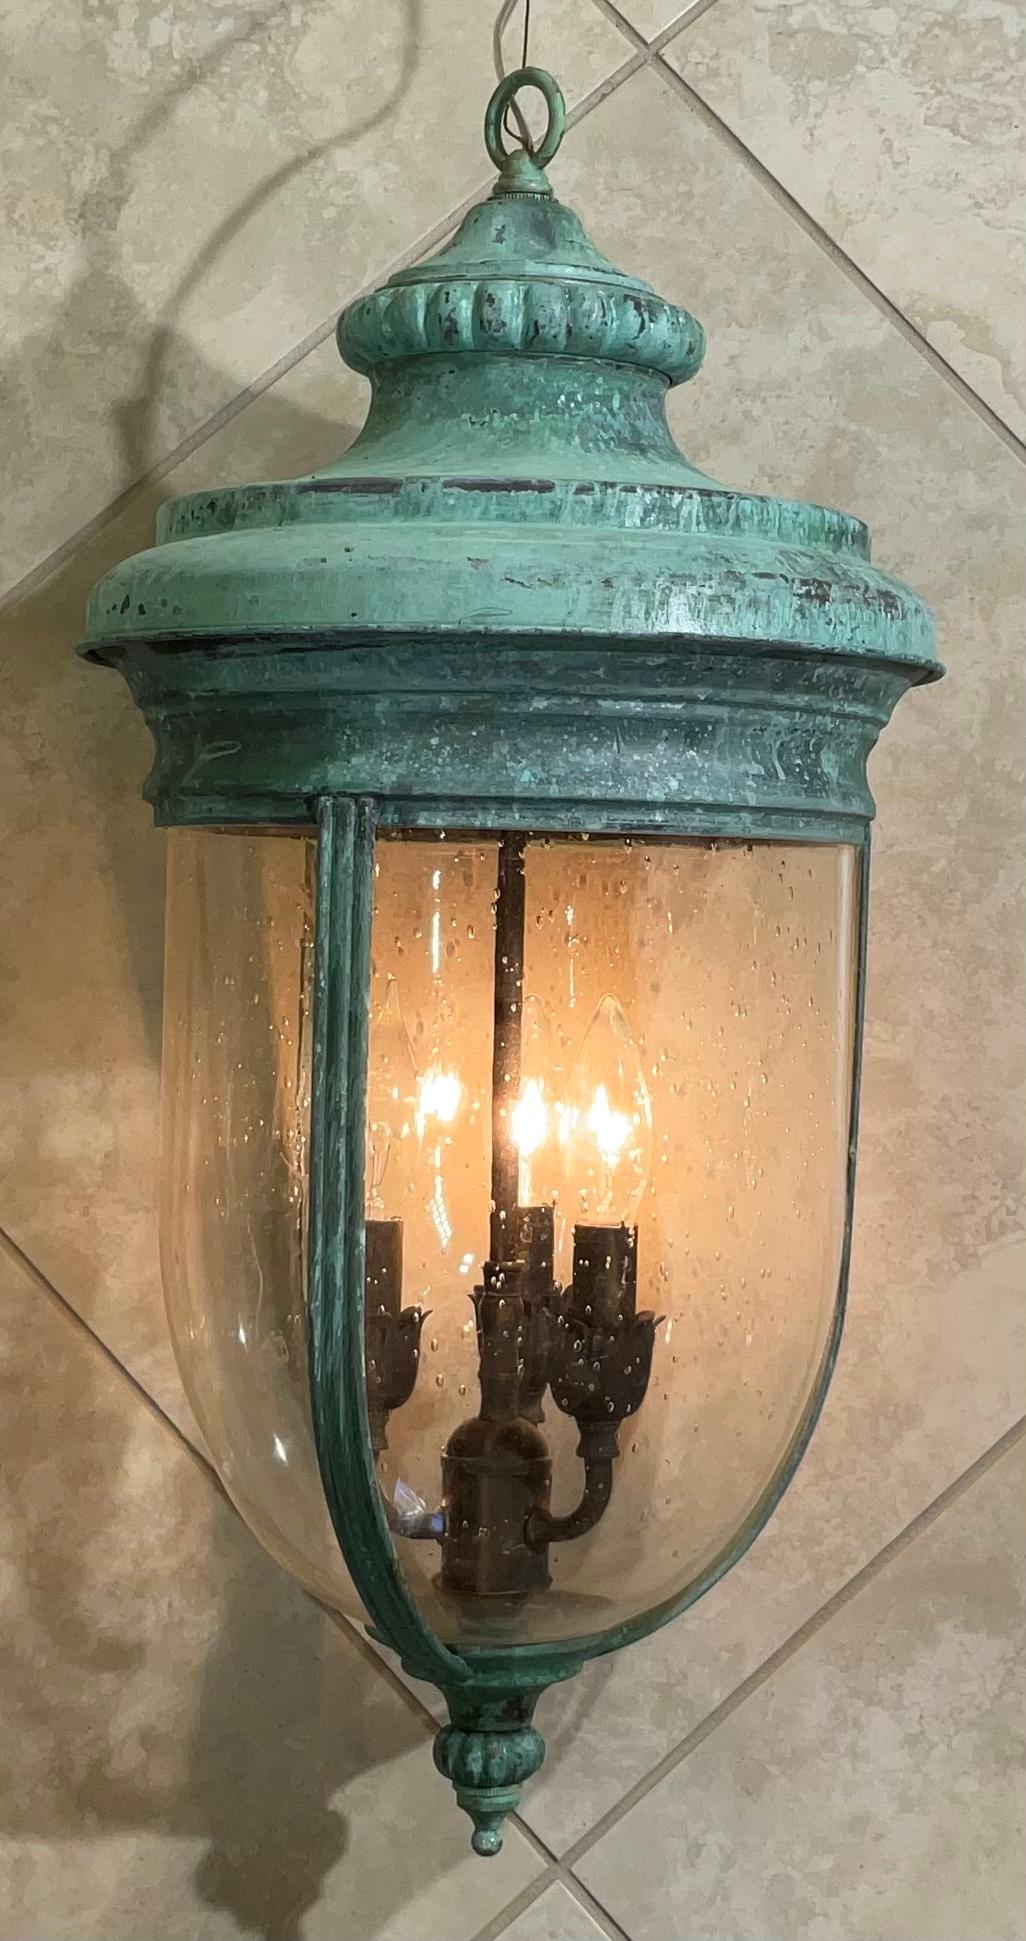 Wunderschöne Hängeleuchte aus Messing des 20. Jahrhunderts mit mundgeblasenem, rundem, gesammeltem Glas, drei 40-Watt-Lampen, tolle grüne Oxidationspatina.
 